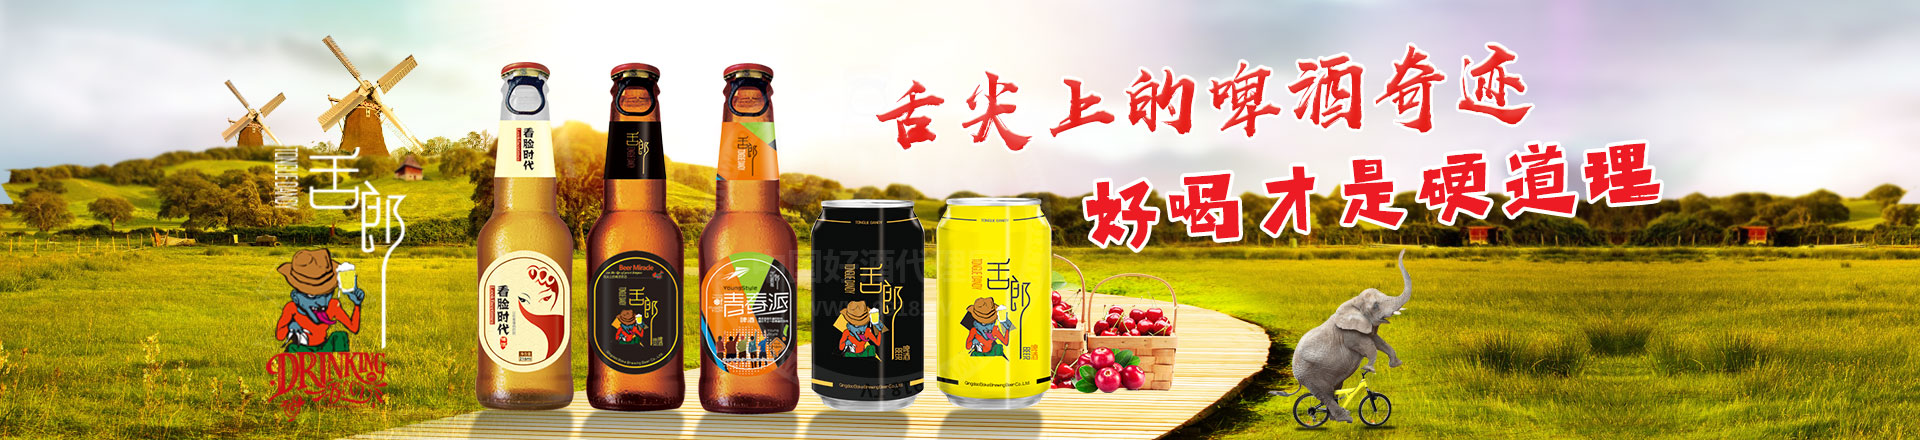 青岛博克精酿啤酒有限公司&英国苏纽啤酒